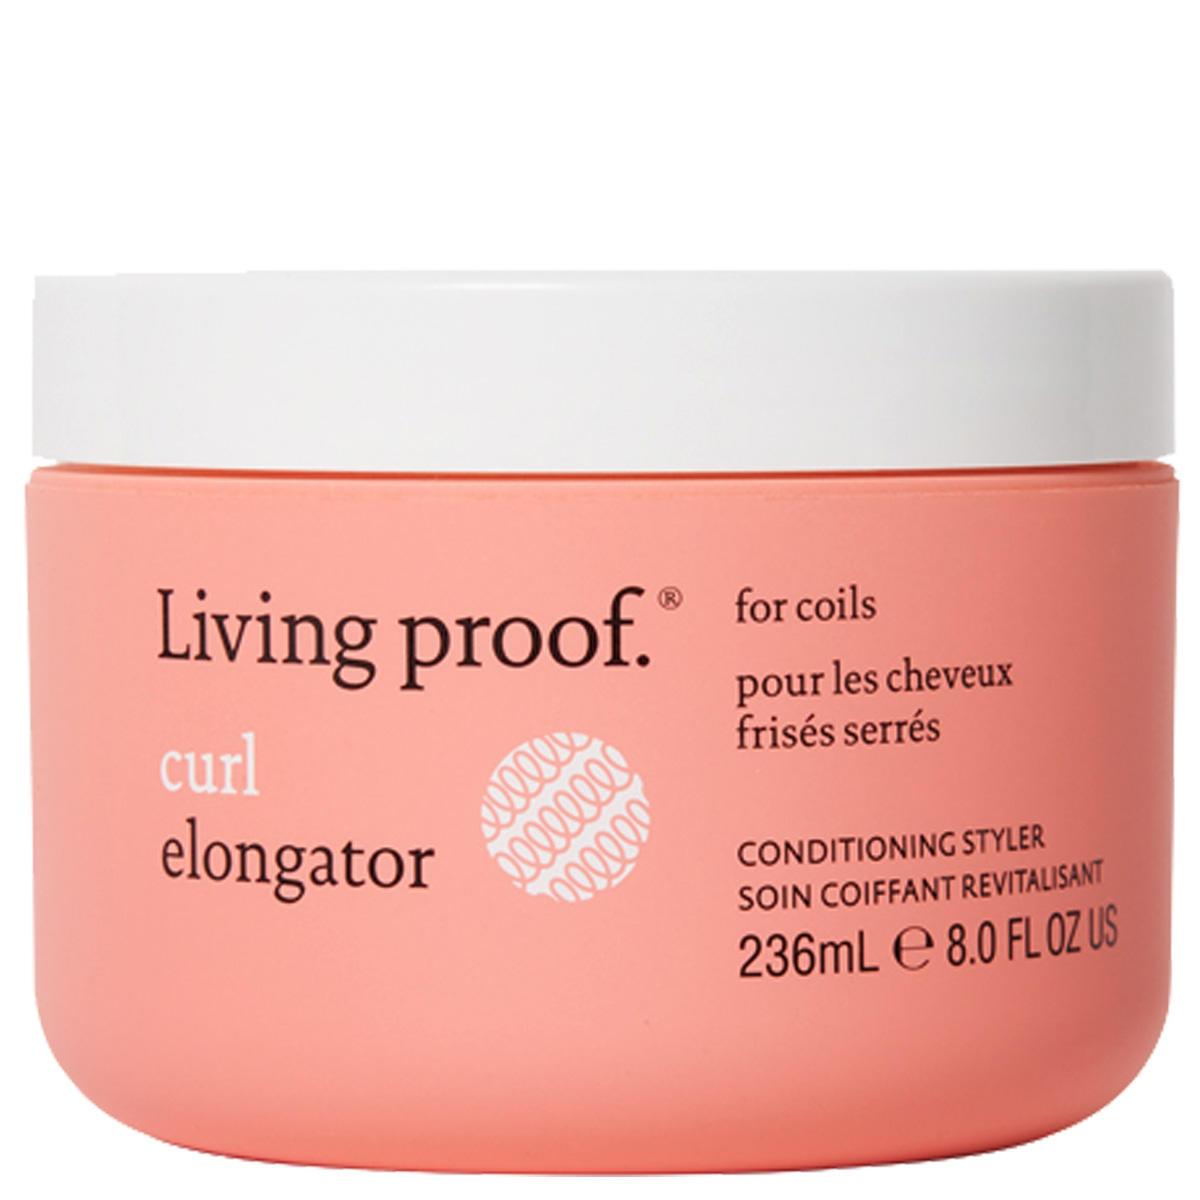 Living proof curl Elongator 236 ml - 1